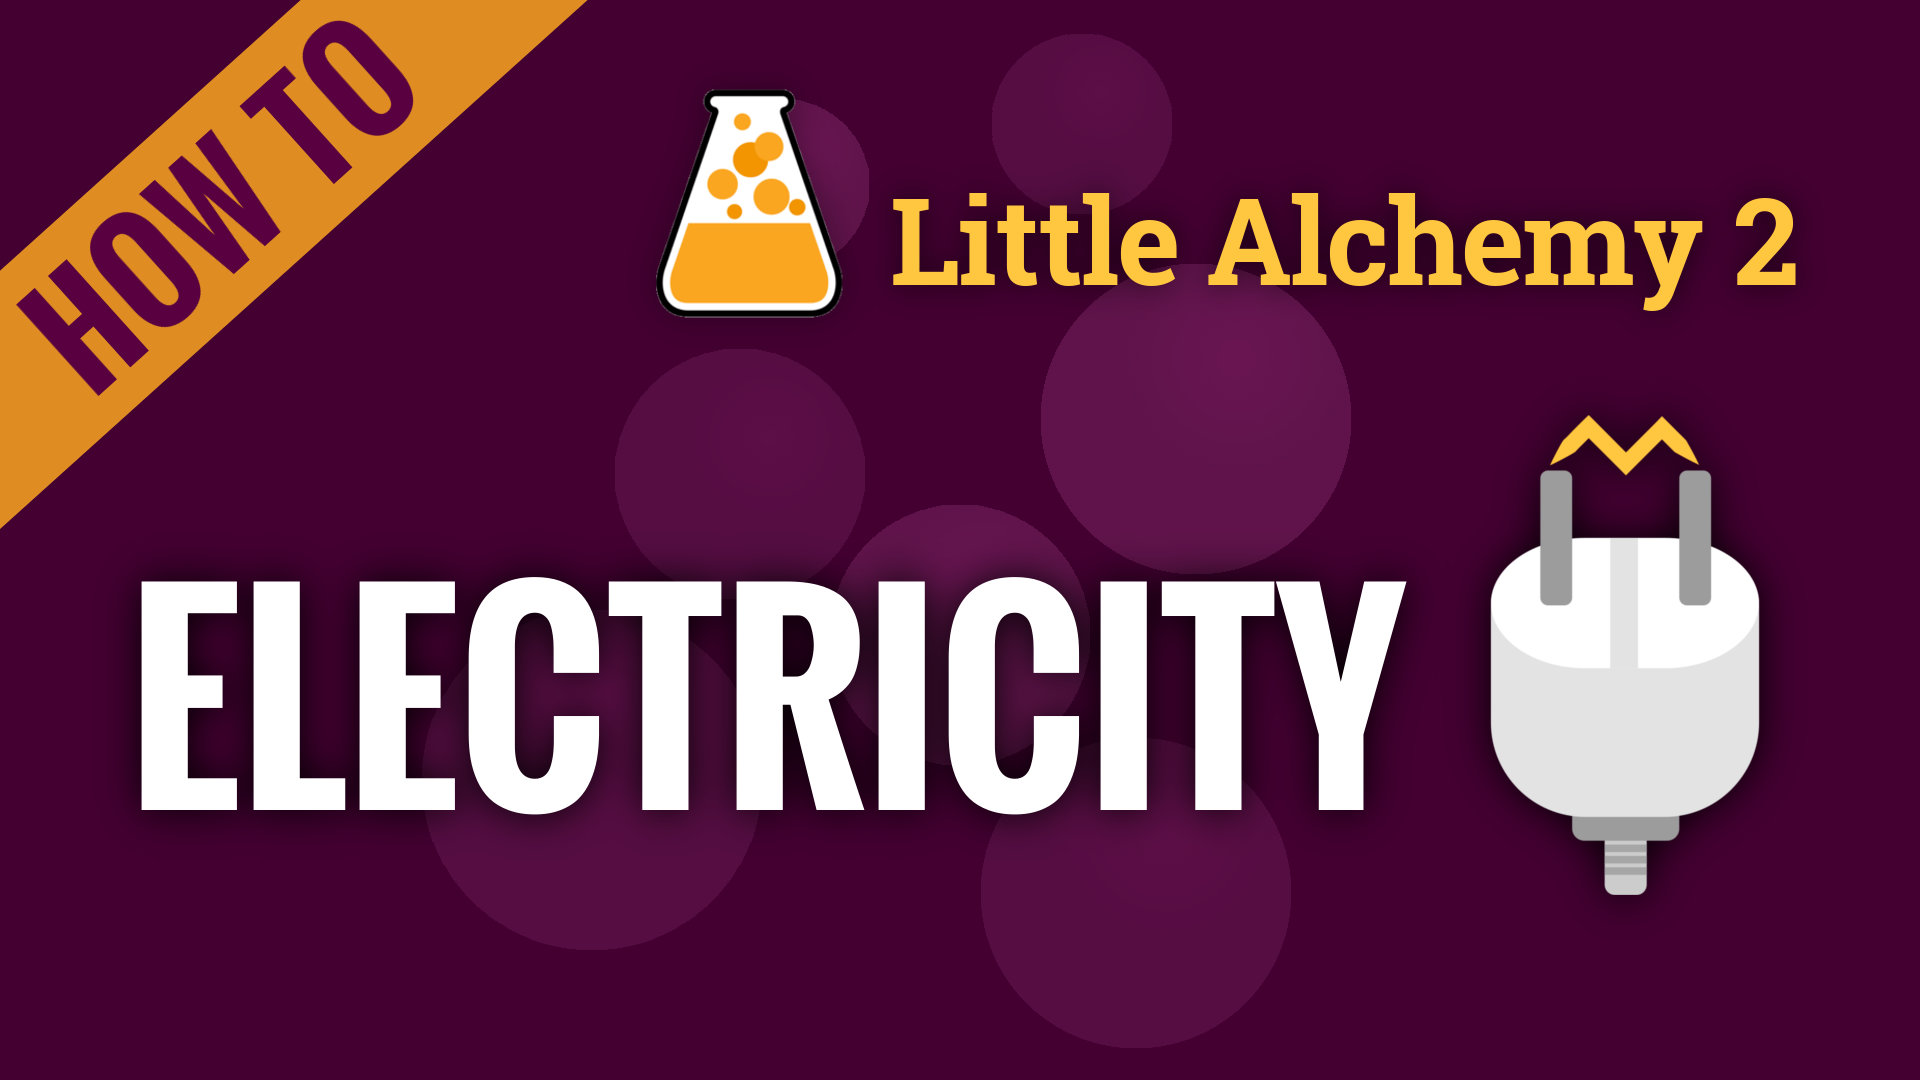 Electricity Little Alchemy 2 Cheats